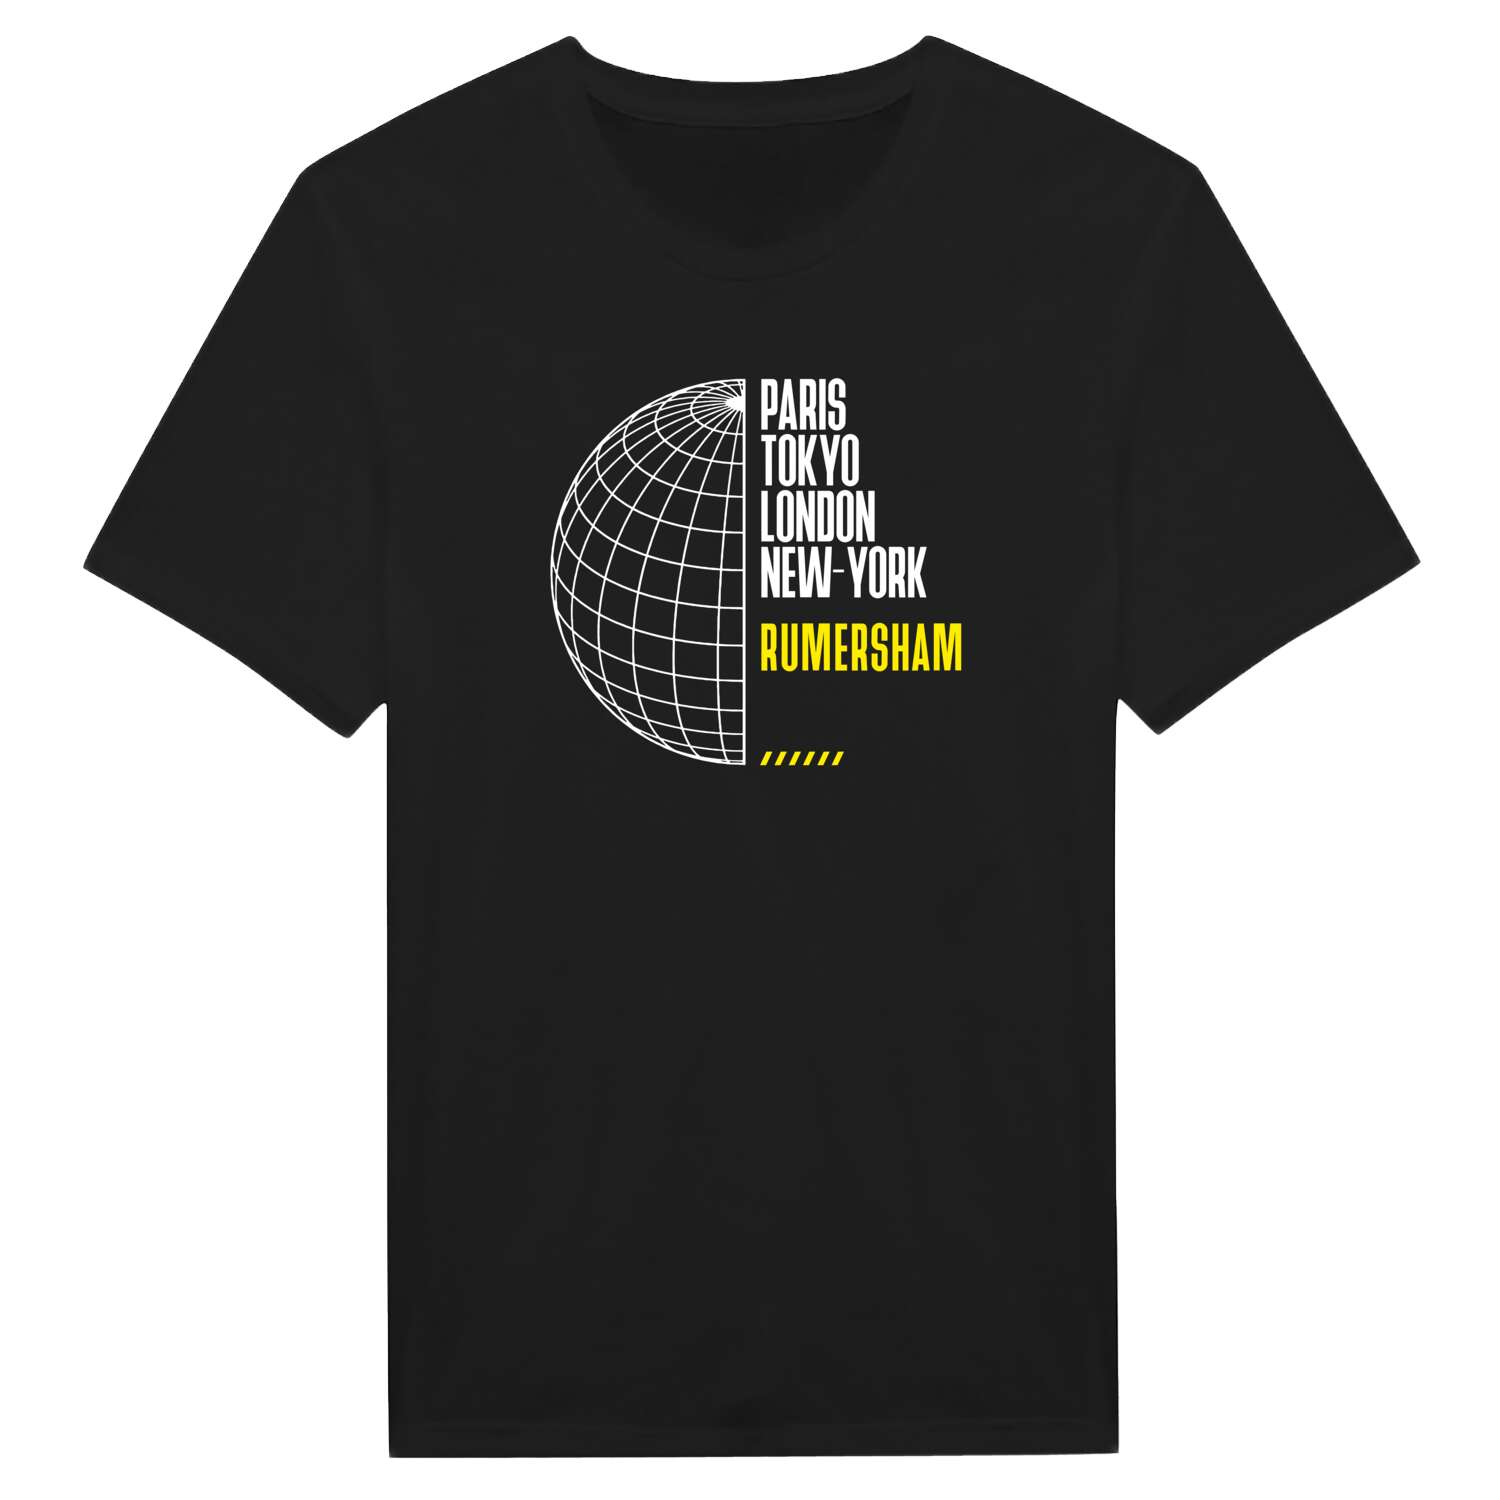 Rumersham T-Shirt »Paris Tokyo London«